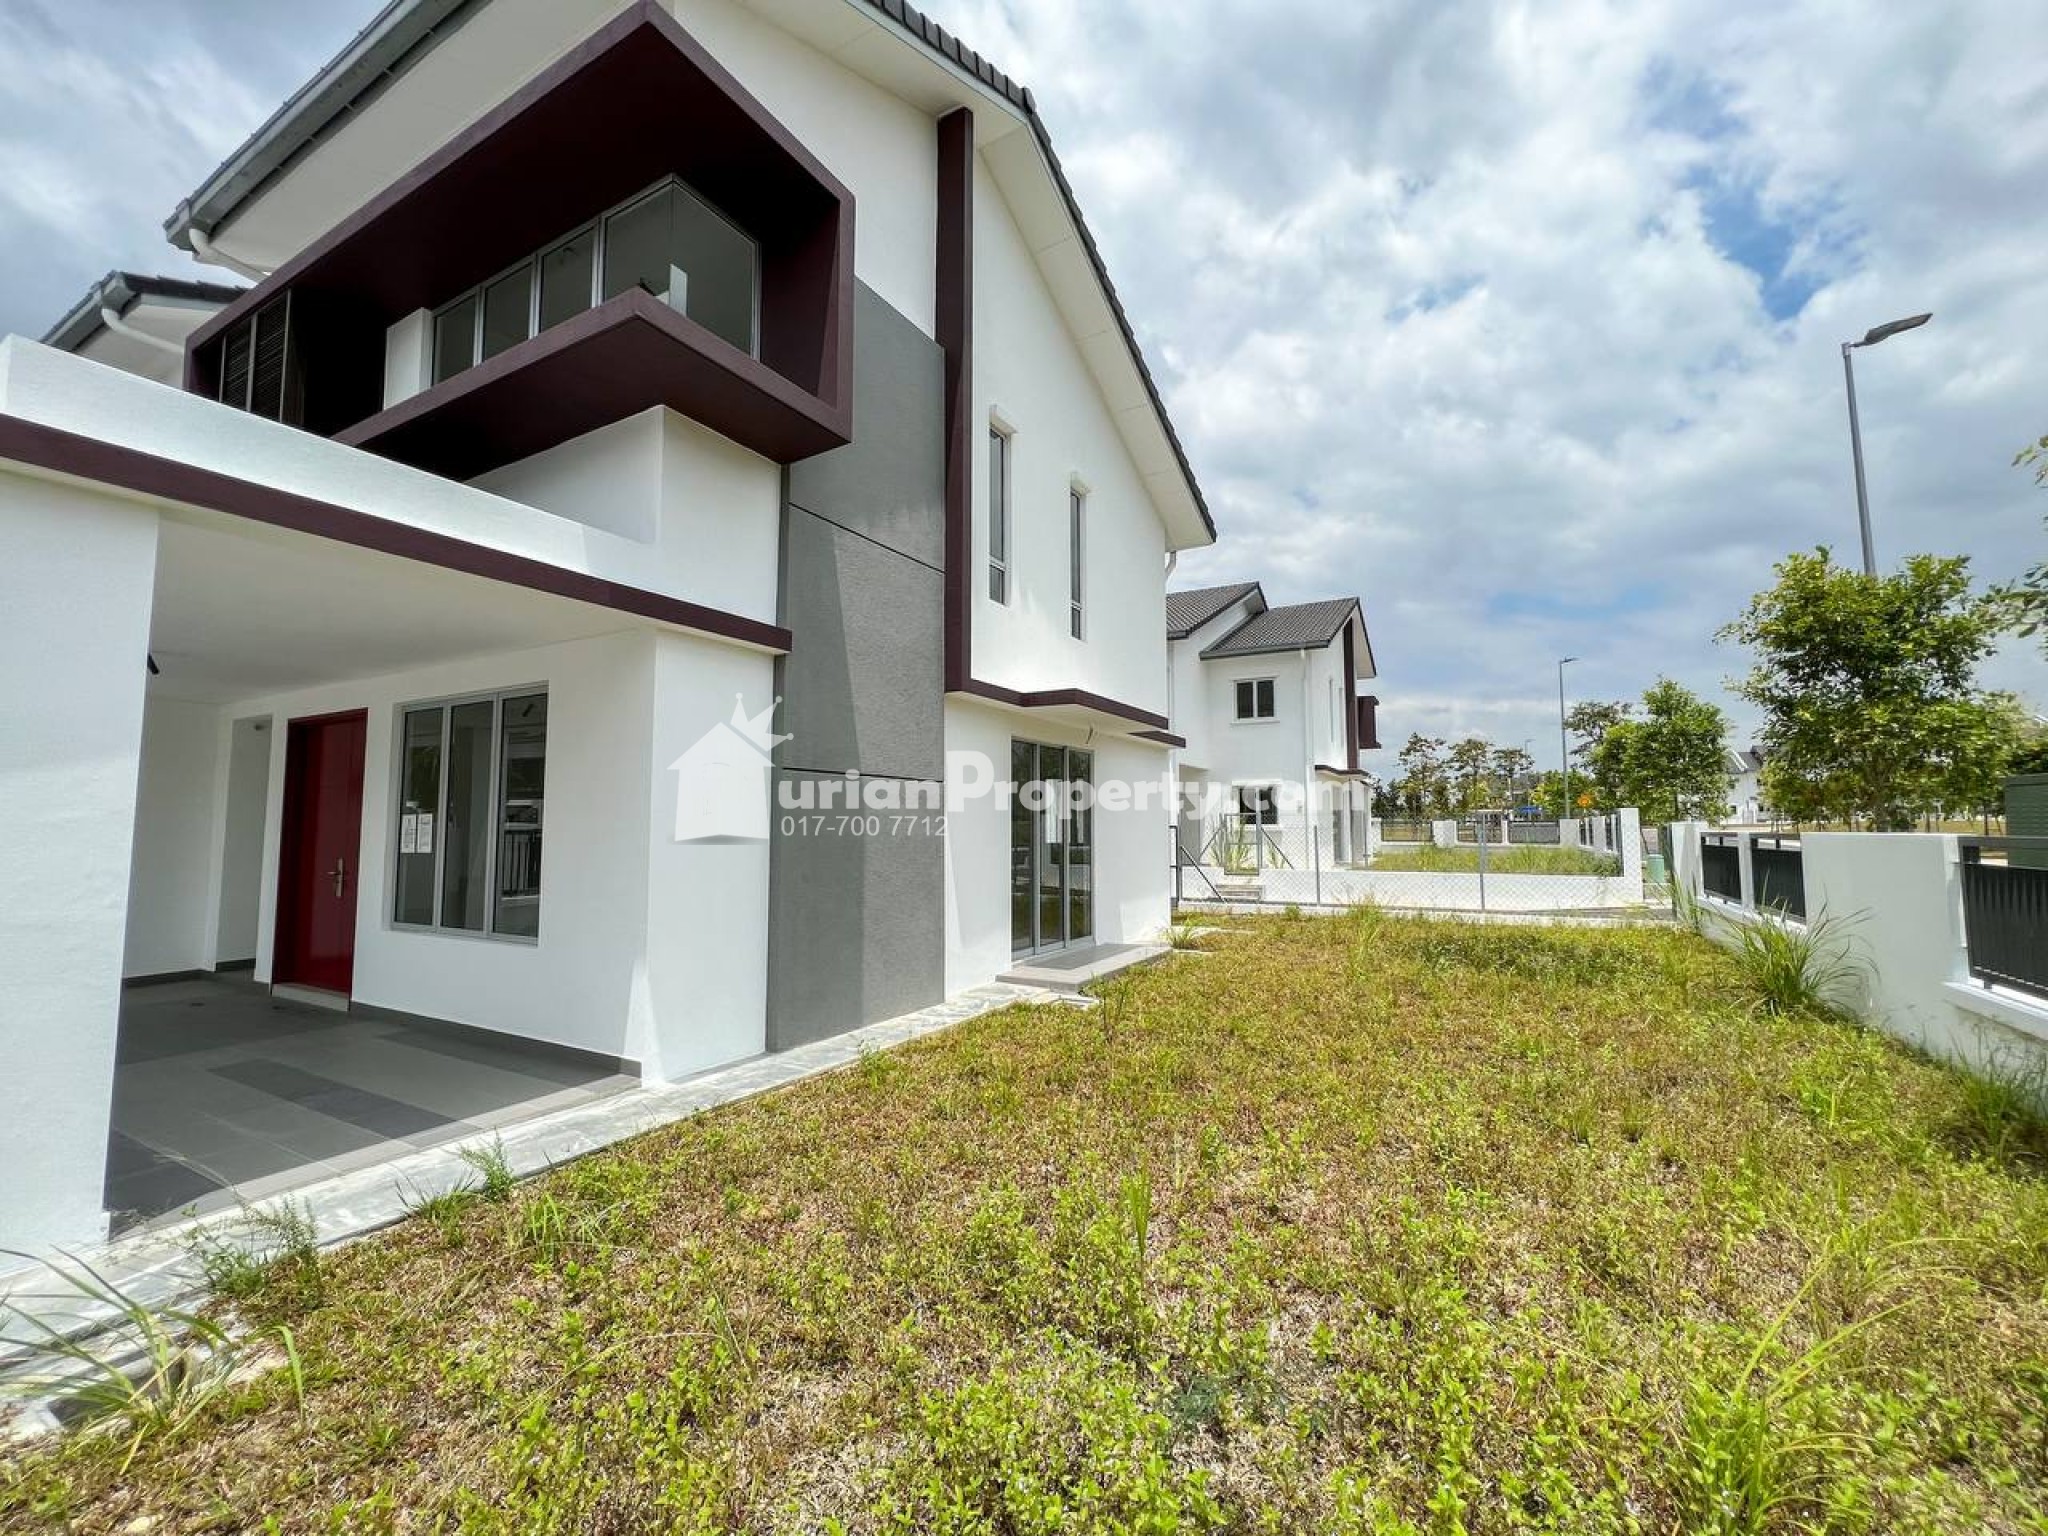 Terrace House For Sale at Bandar Rimbayu